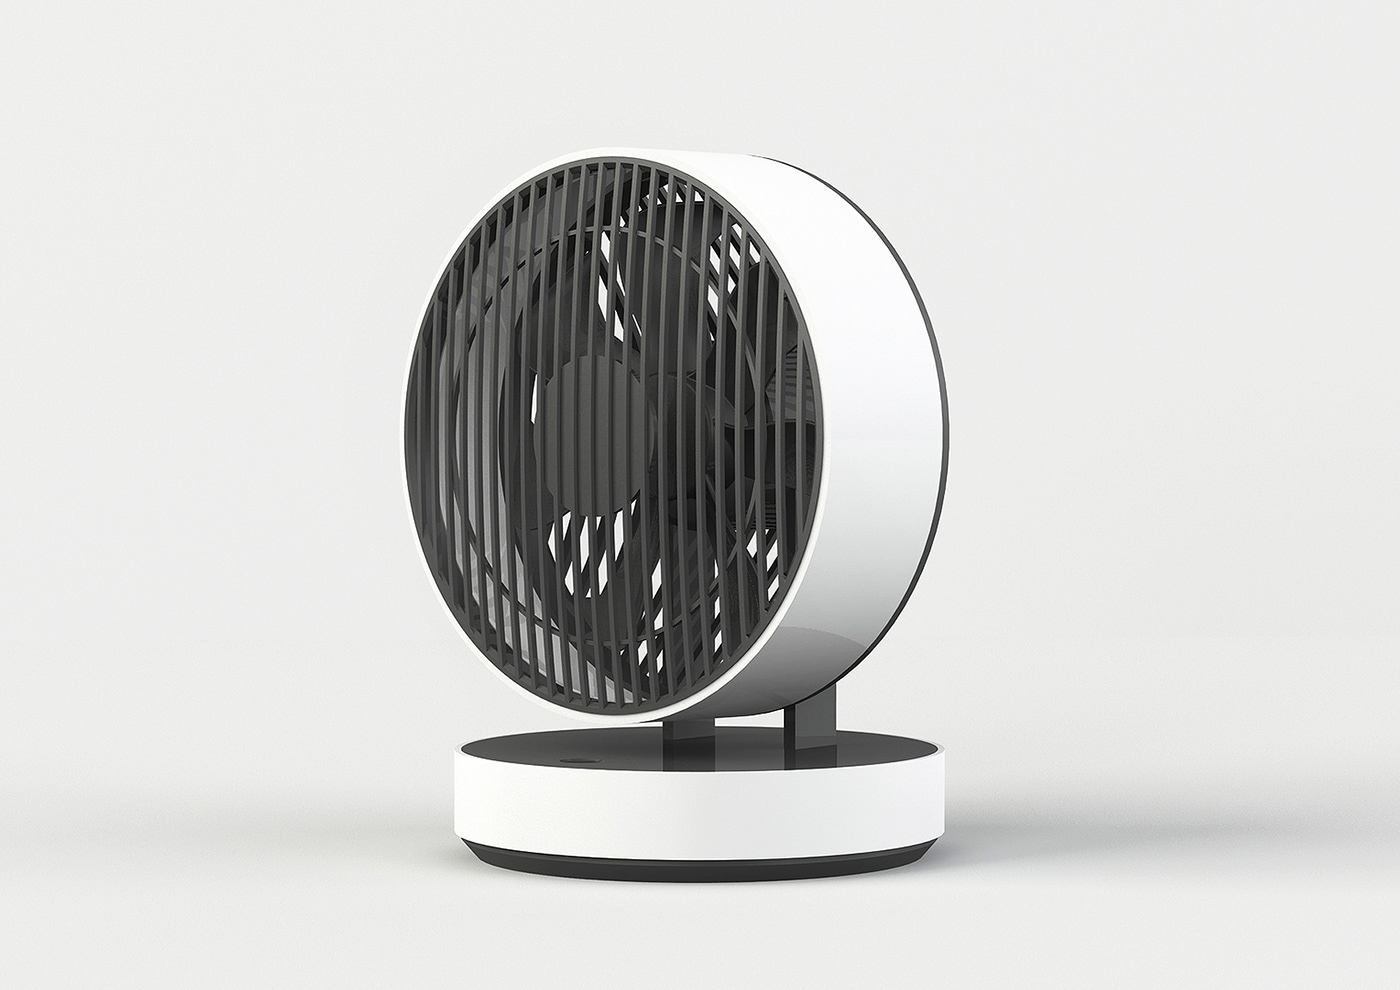 8-inch electric fan electric fan